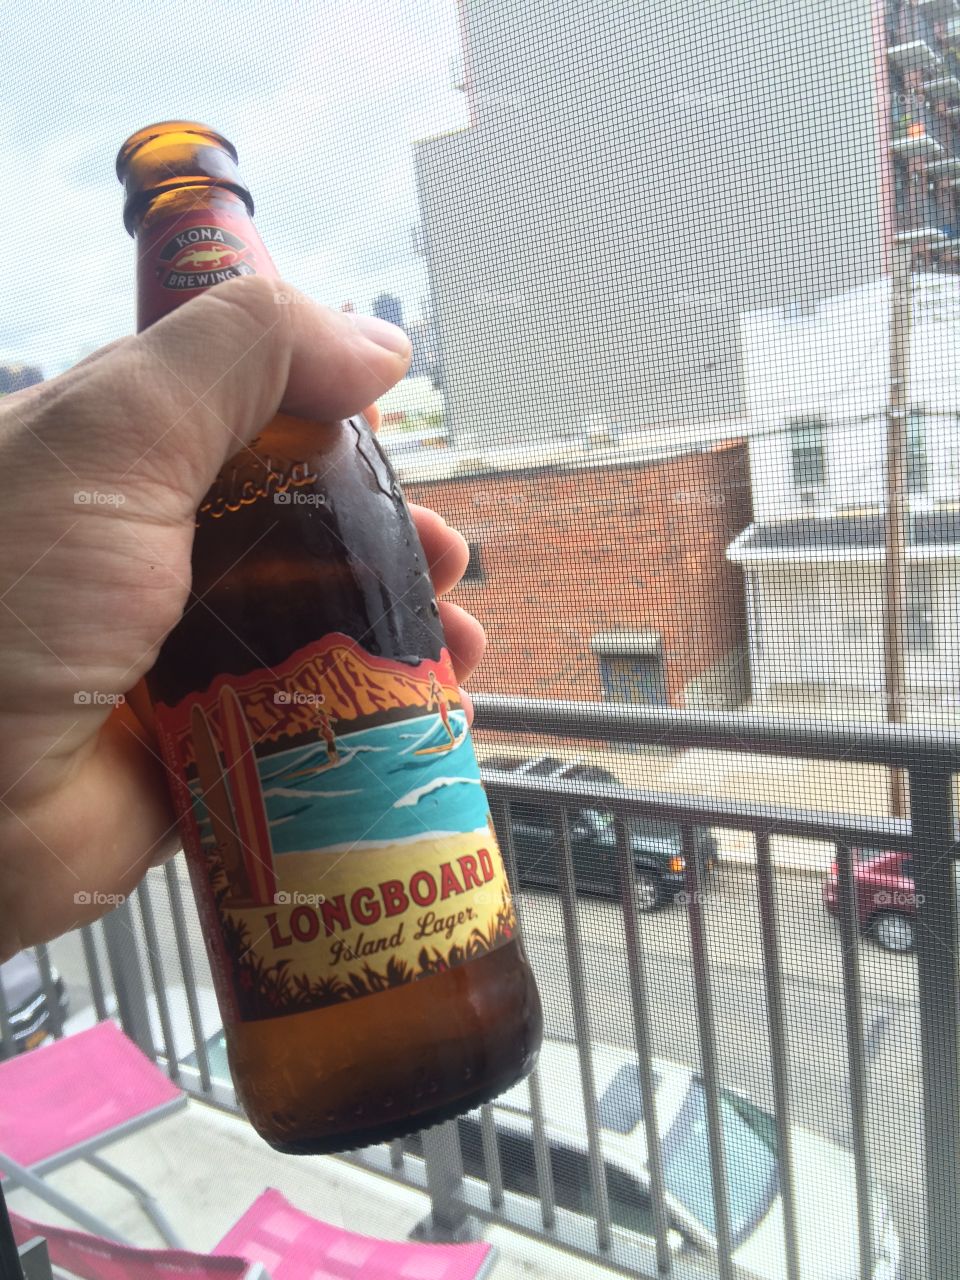 Enjoying a LongBoard Lager by Kona Brewing. 